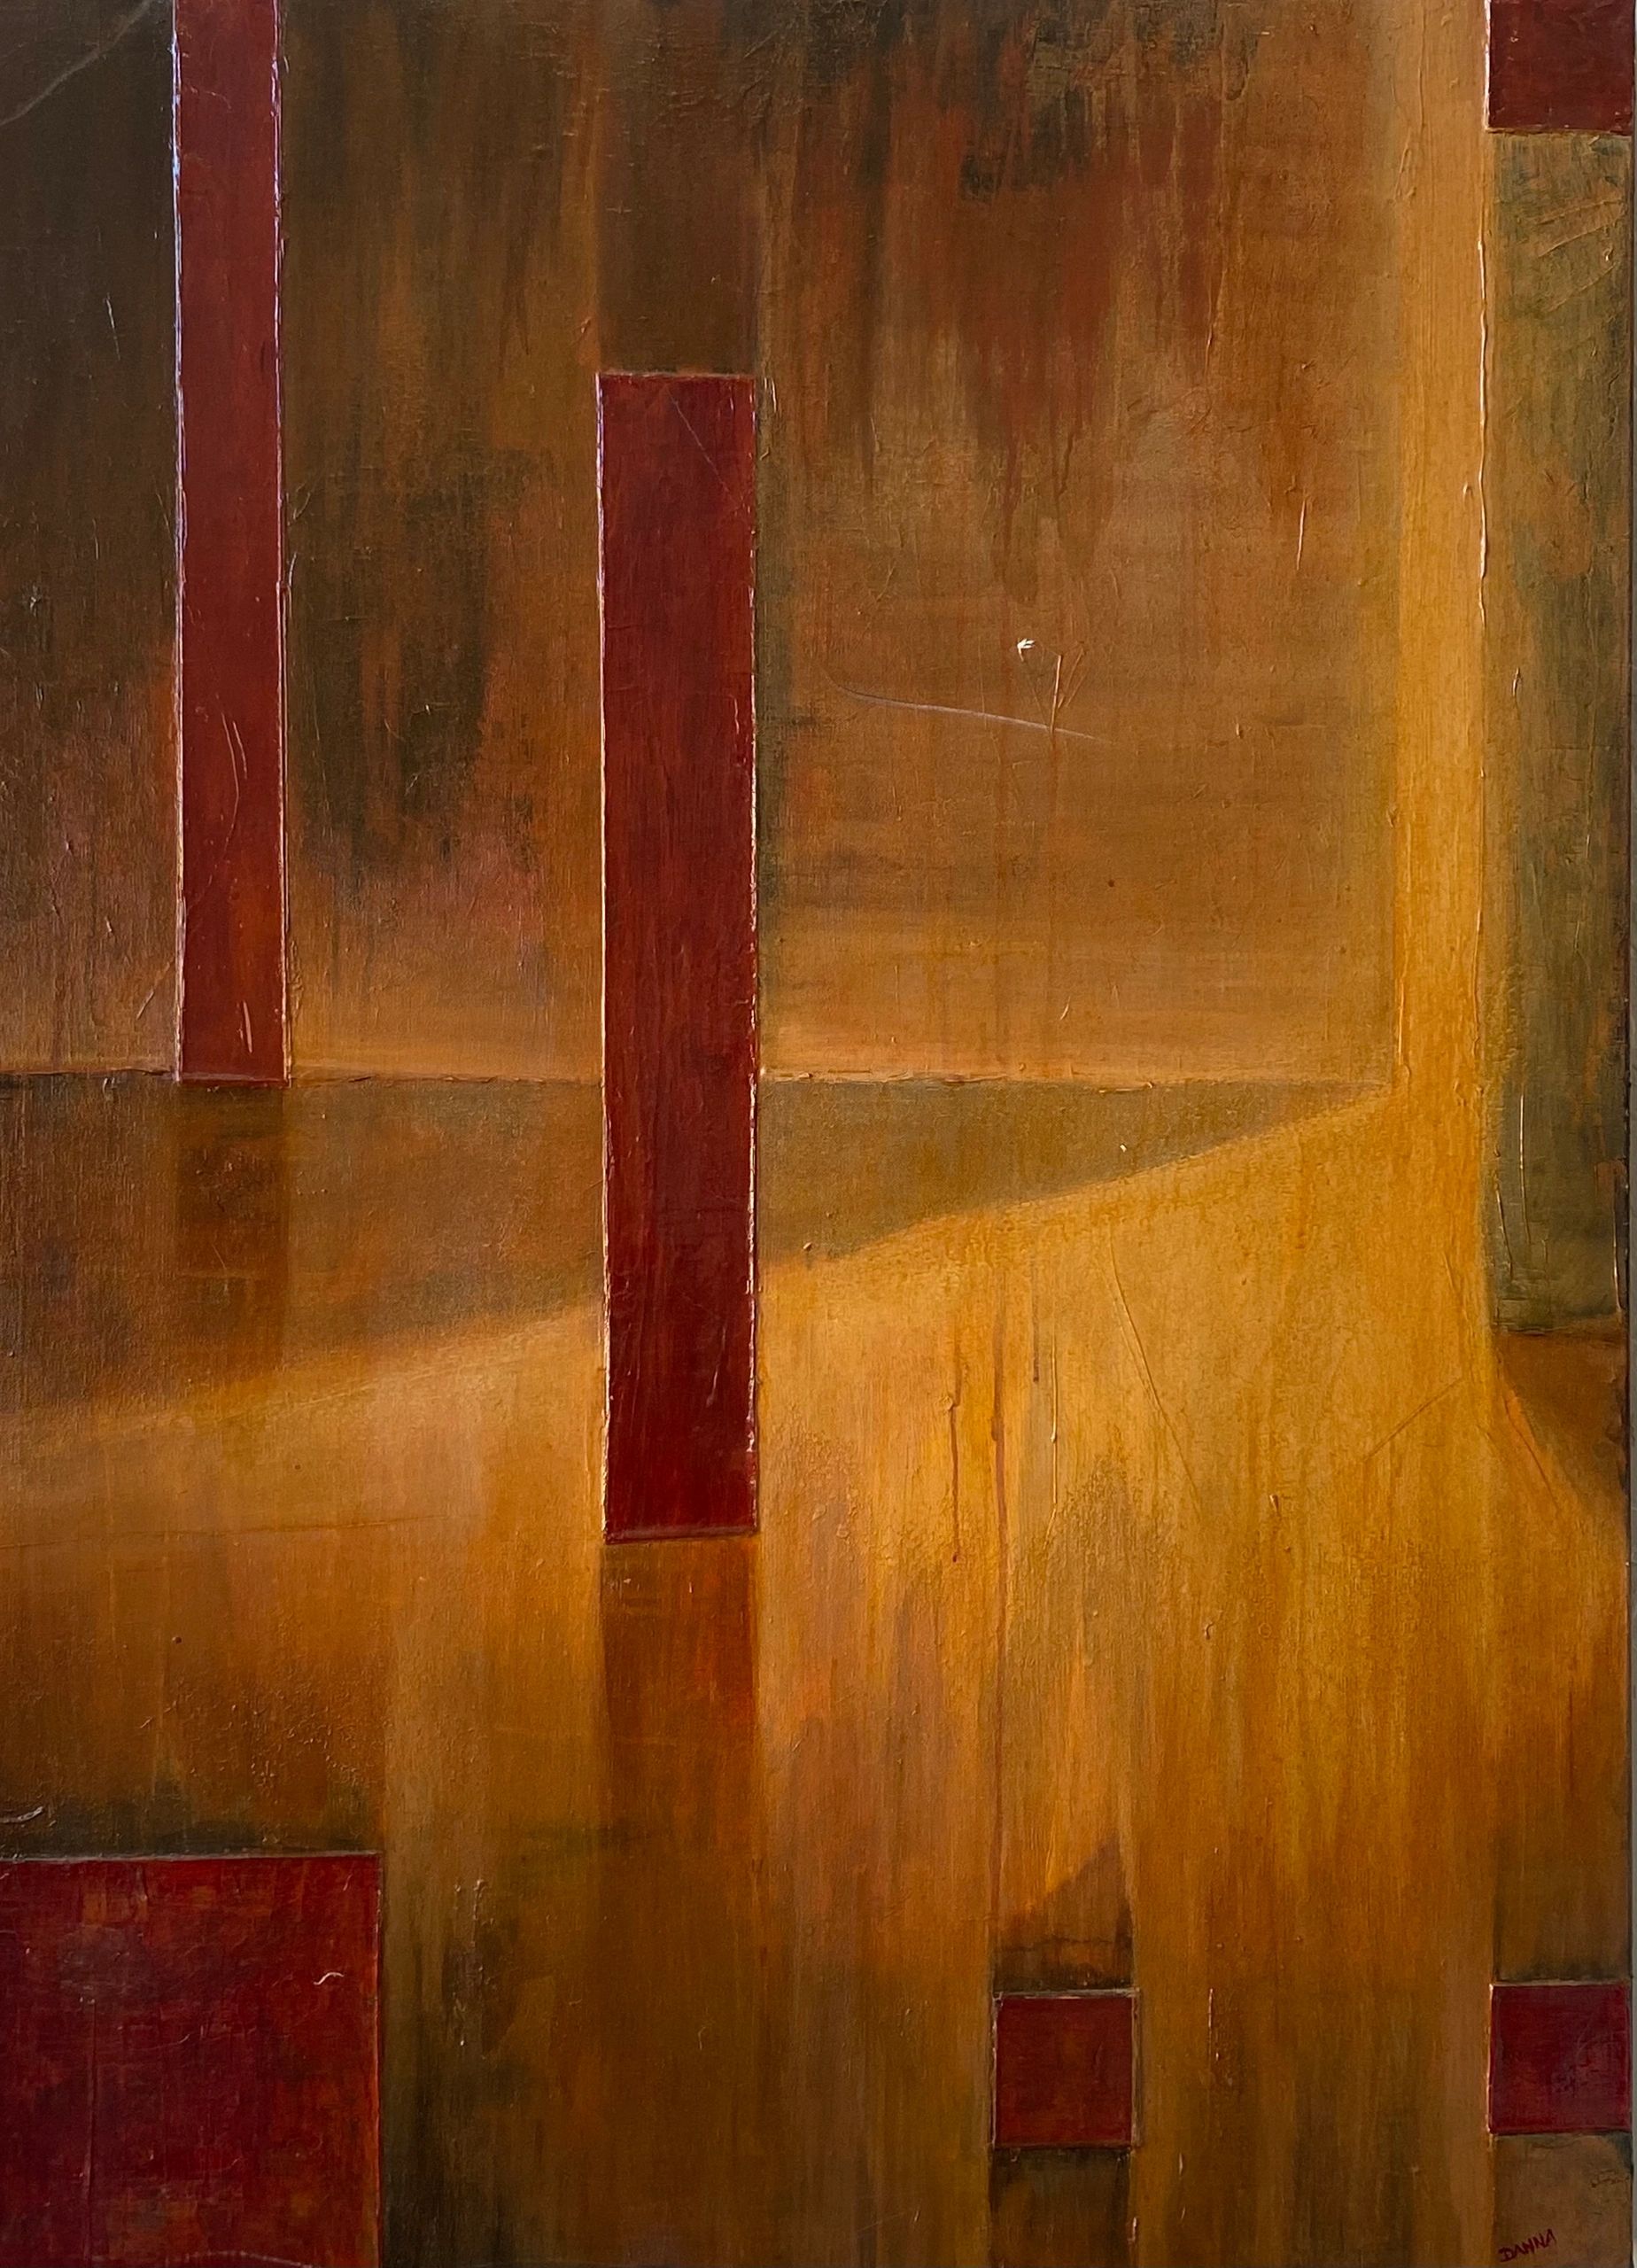 La Luz, 2003 
Acrylic and Oul on Canvas 36” X 48”
$2,600.00